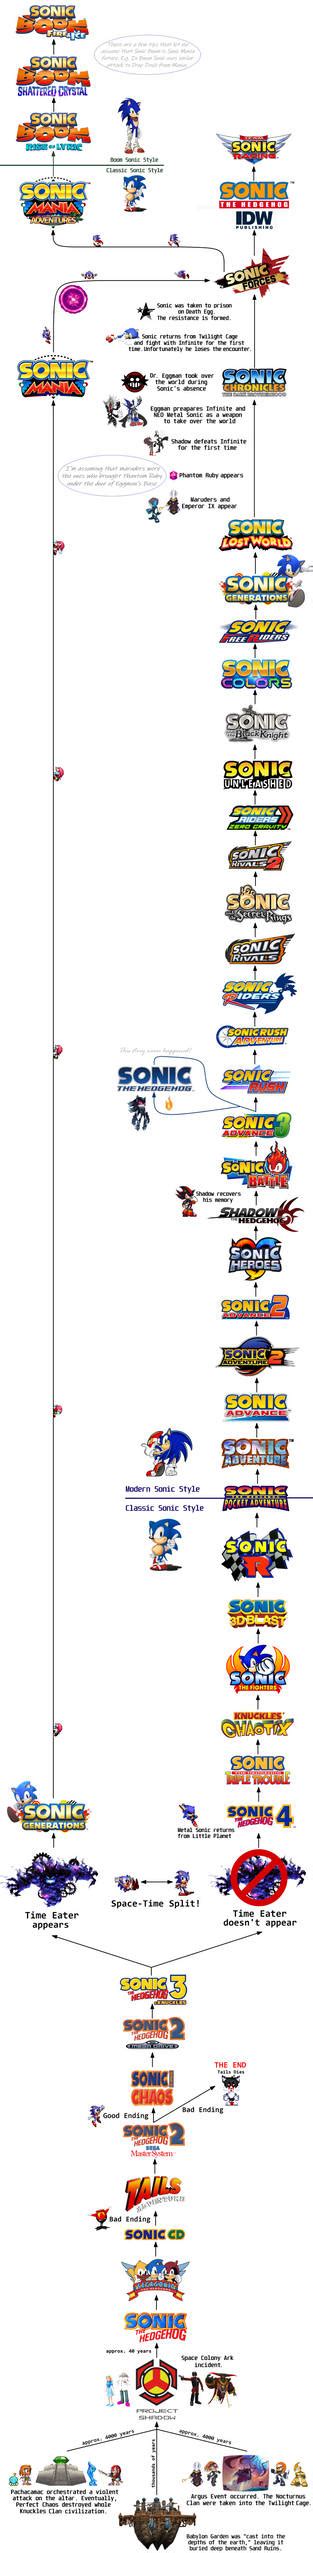 Sonic The Hedgehog Timeline By Legowariat96 On Deviantart